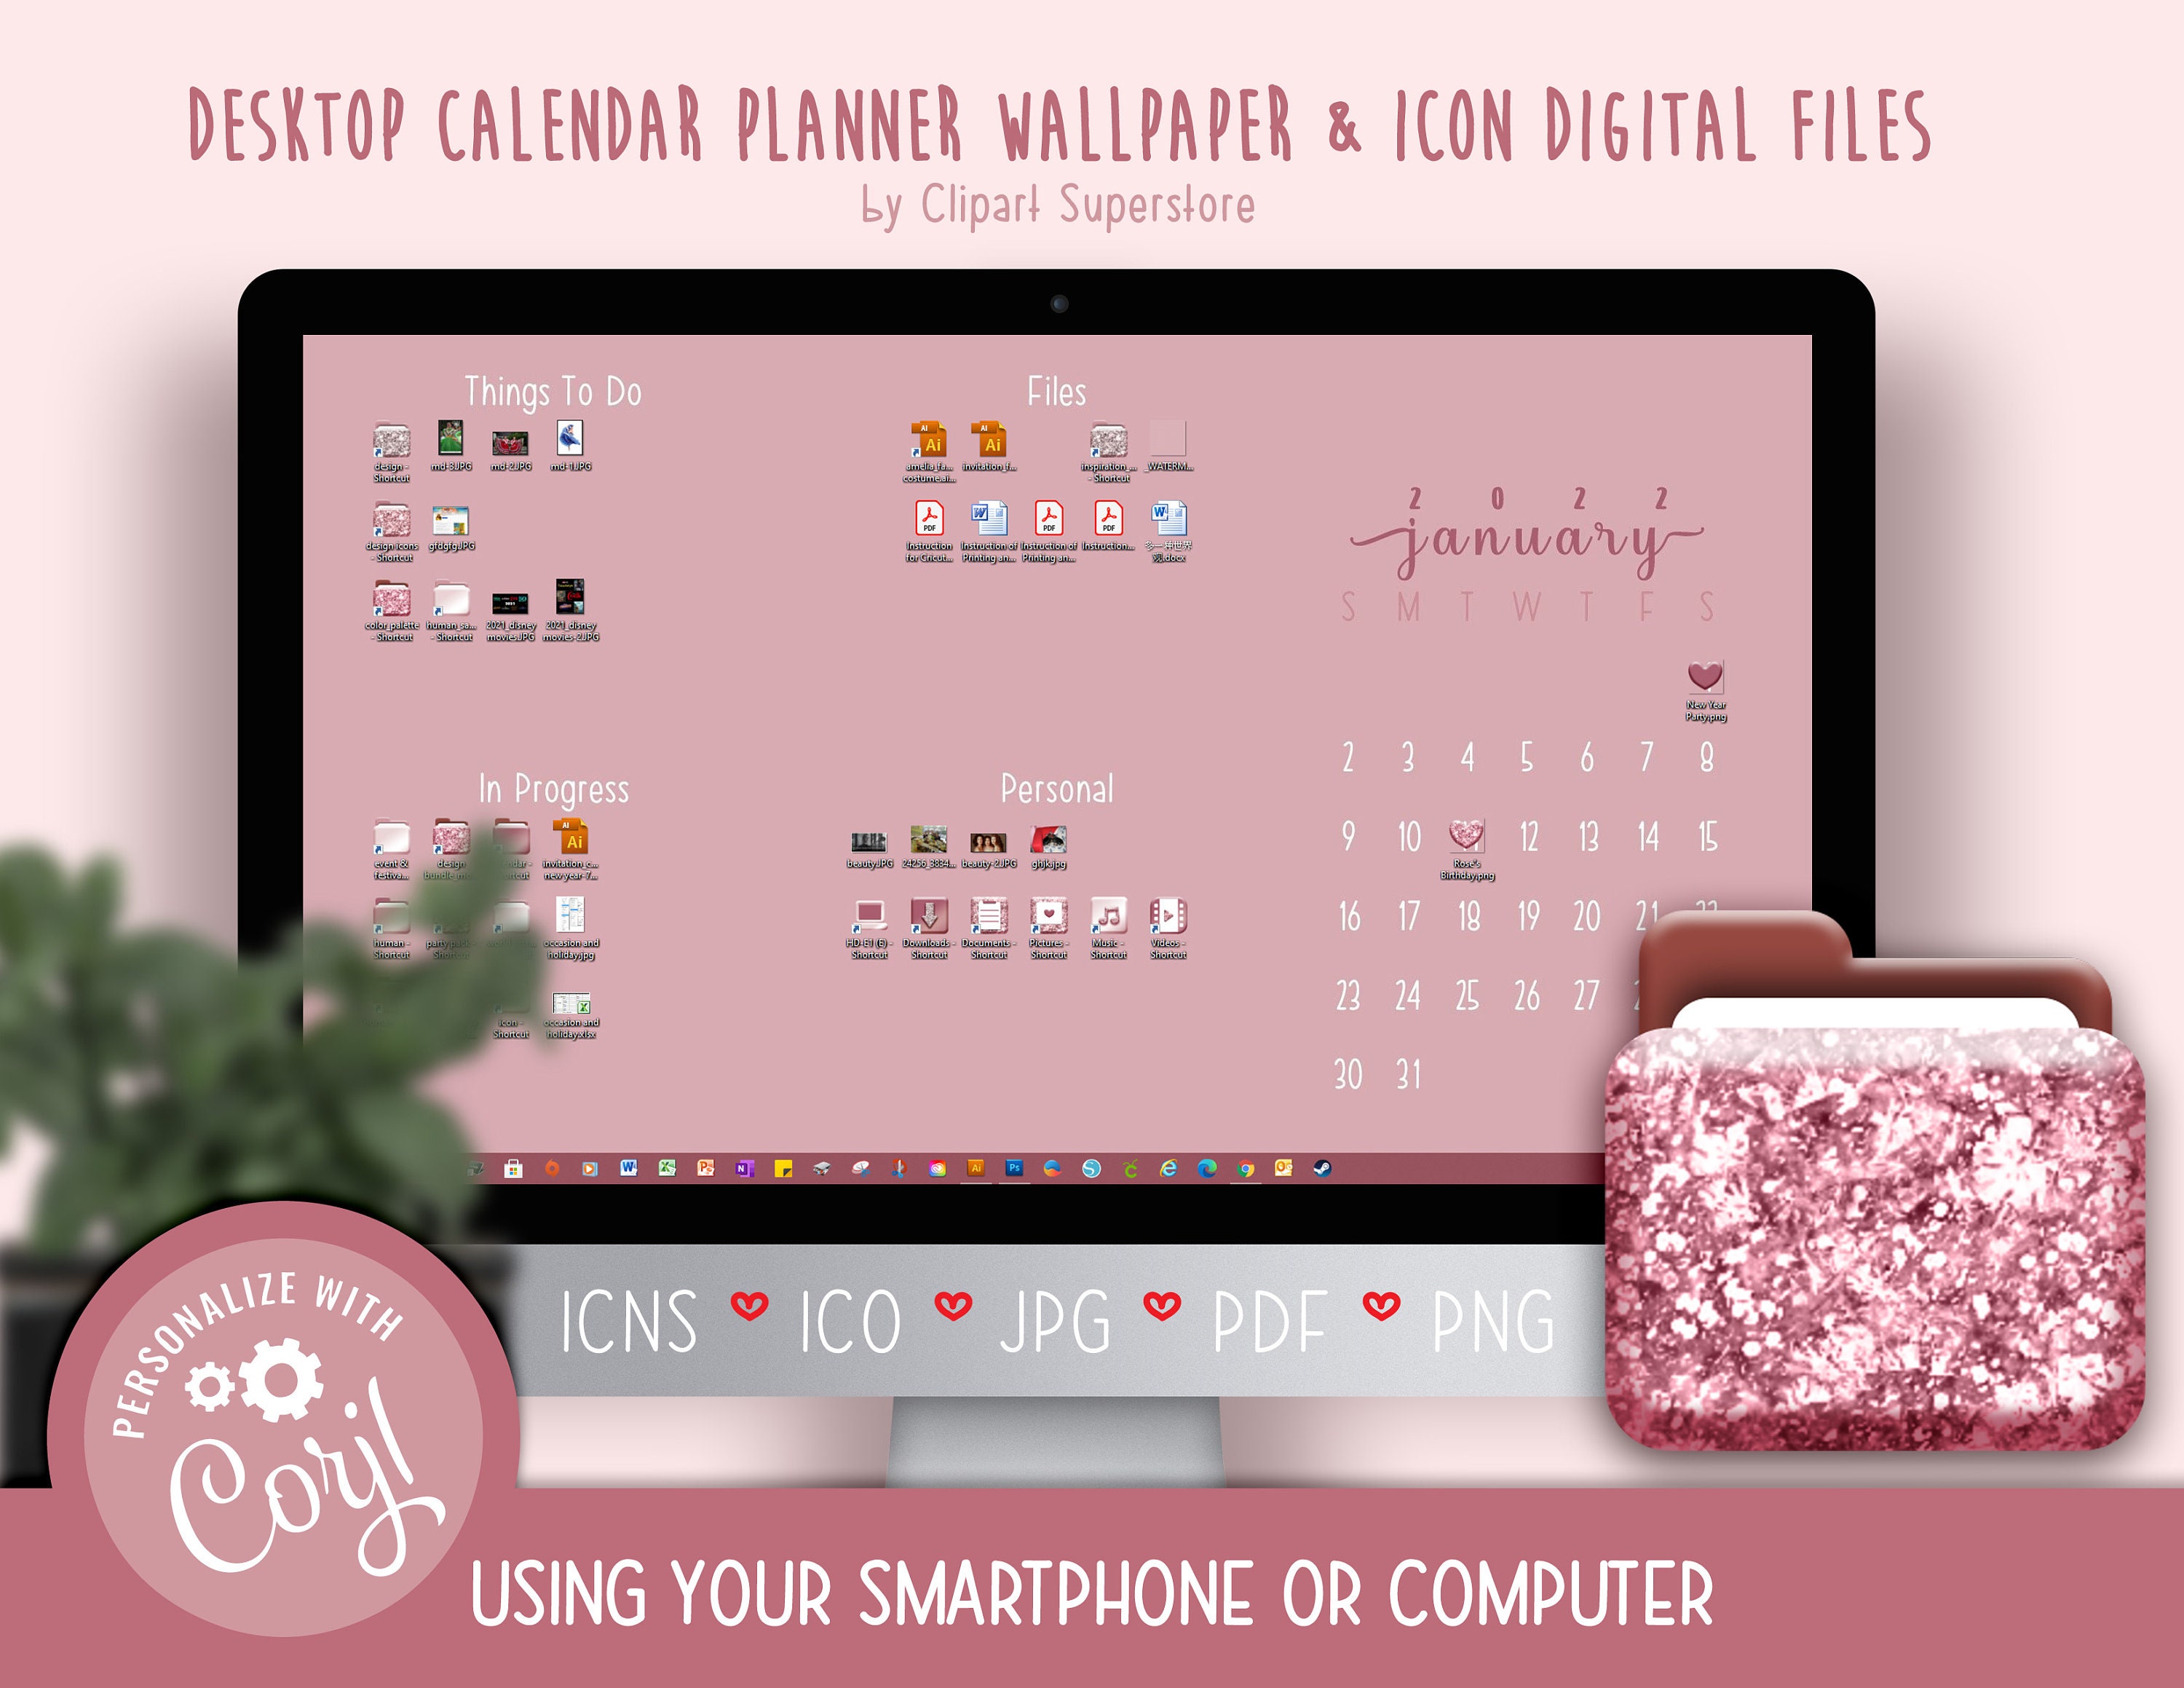 Desktop Wallpaper Calendar 2022 2021 2022 Desktop Calendar Wallpaper Organizer Planner And | Etsy Singapore